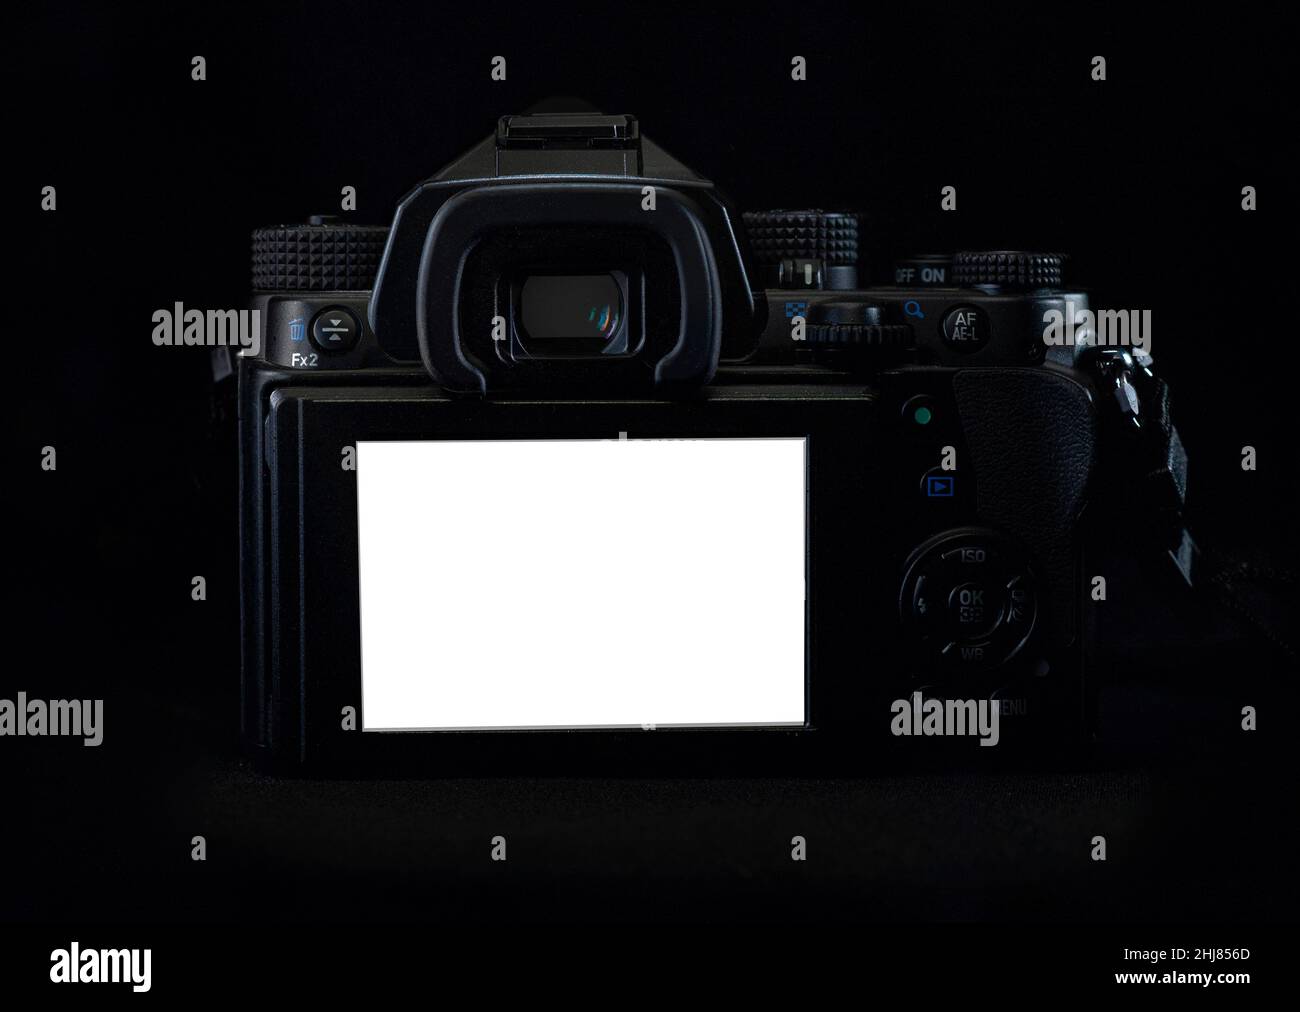 Low-Key-Licht, Rückseite einer DSLR mit schwarzem Gehäuse auf schwarzem Hintergrund, zeigt den LCD-Bildschirm in Weiß mit Arim-Licht auf der oberen Nahaufnahme Stockfoto